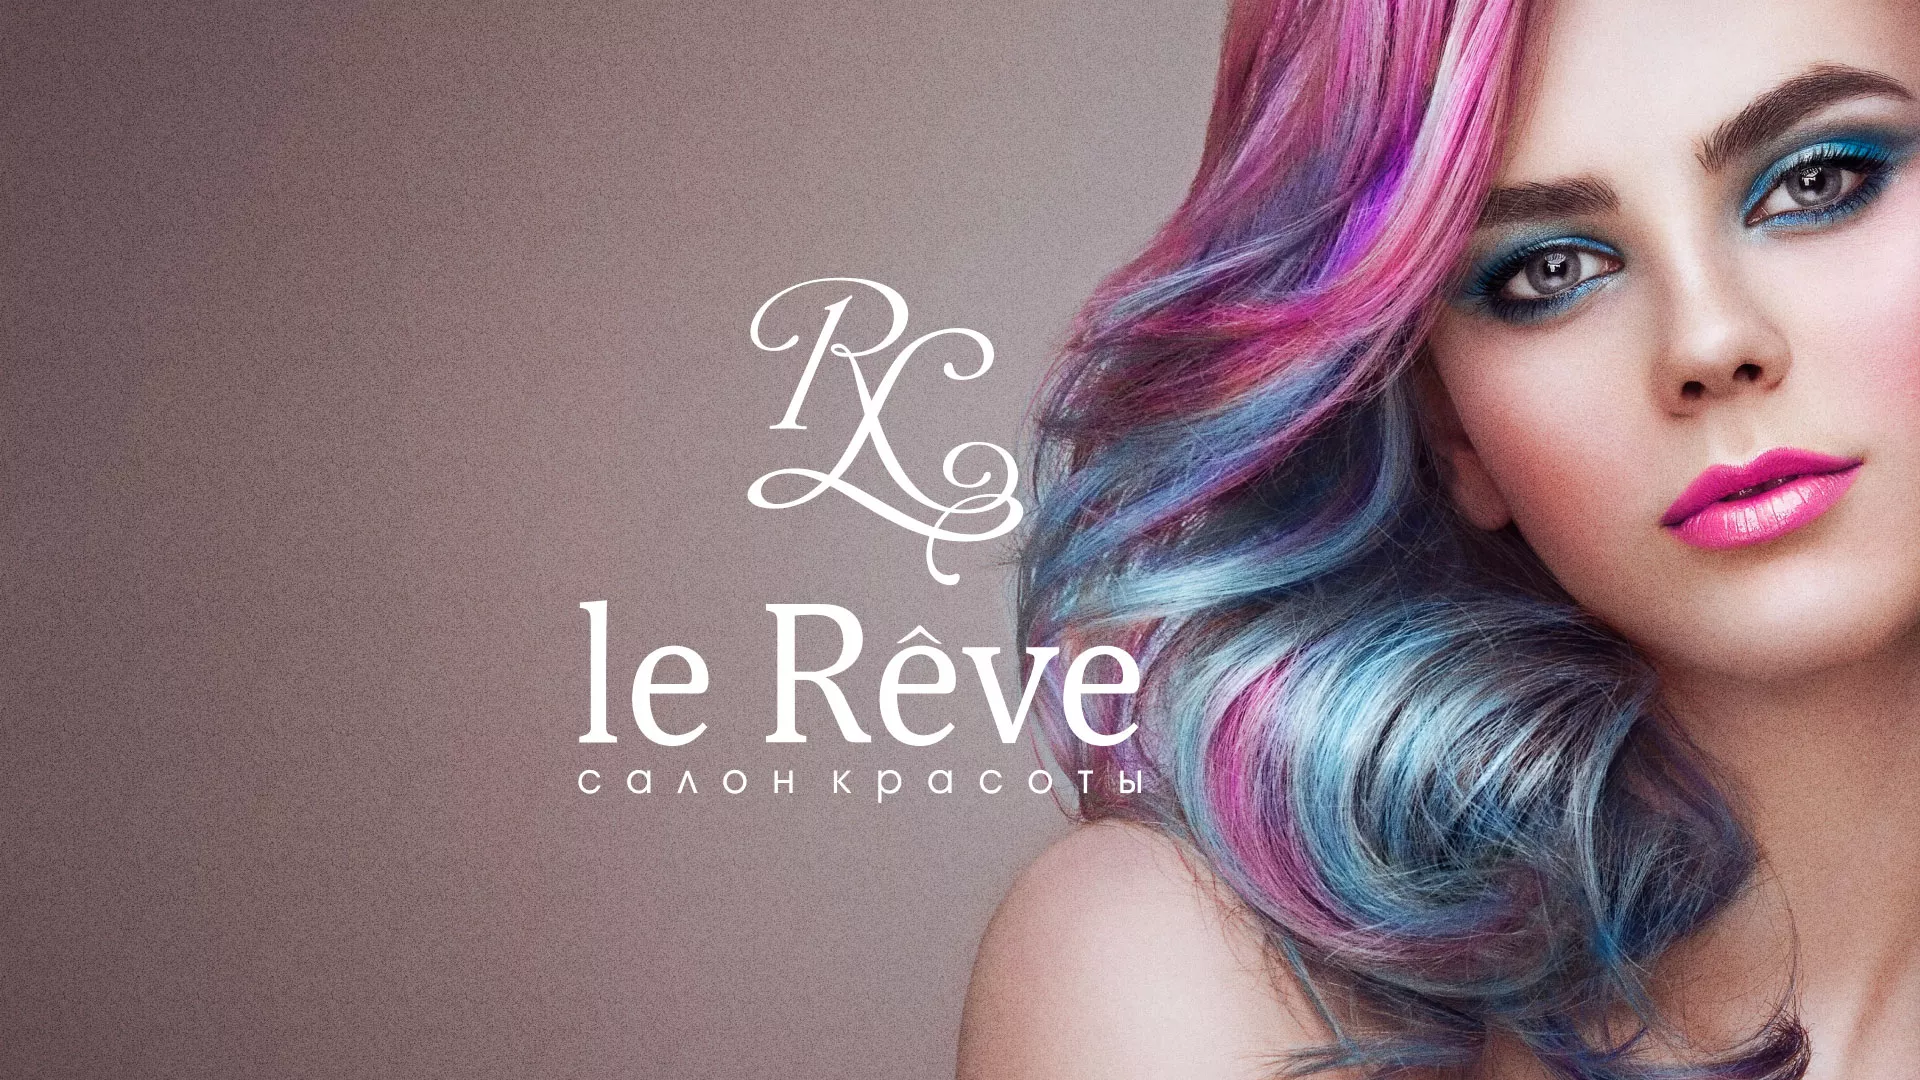 Создание сайта для салона красоты «Le Reve» в Сосновоборске